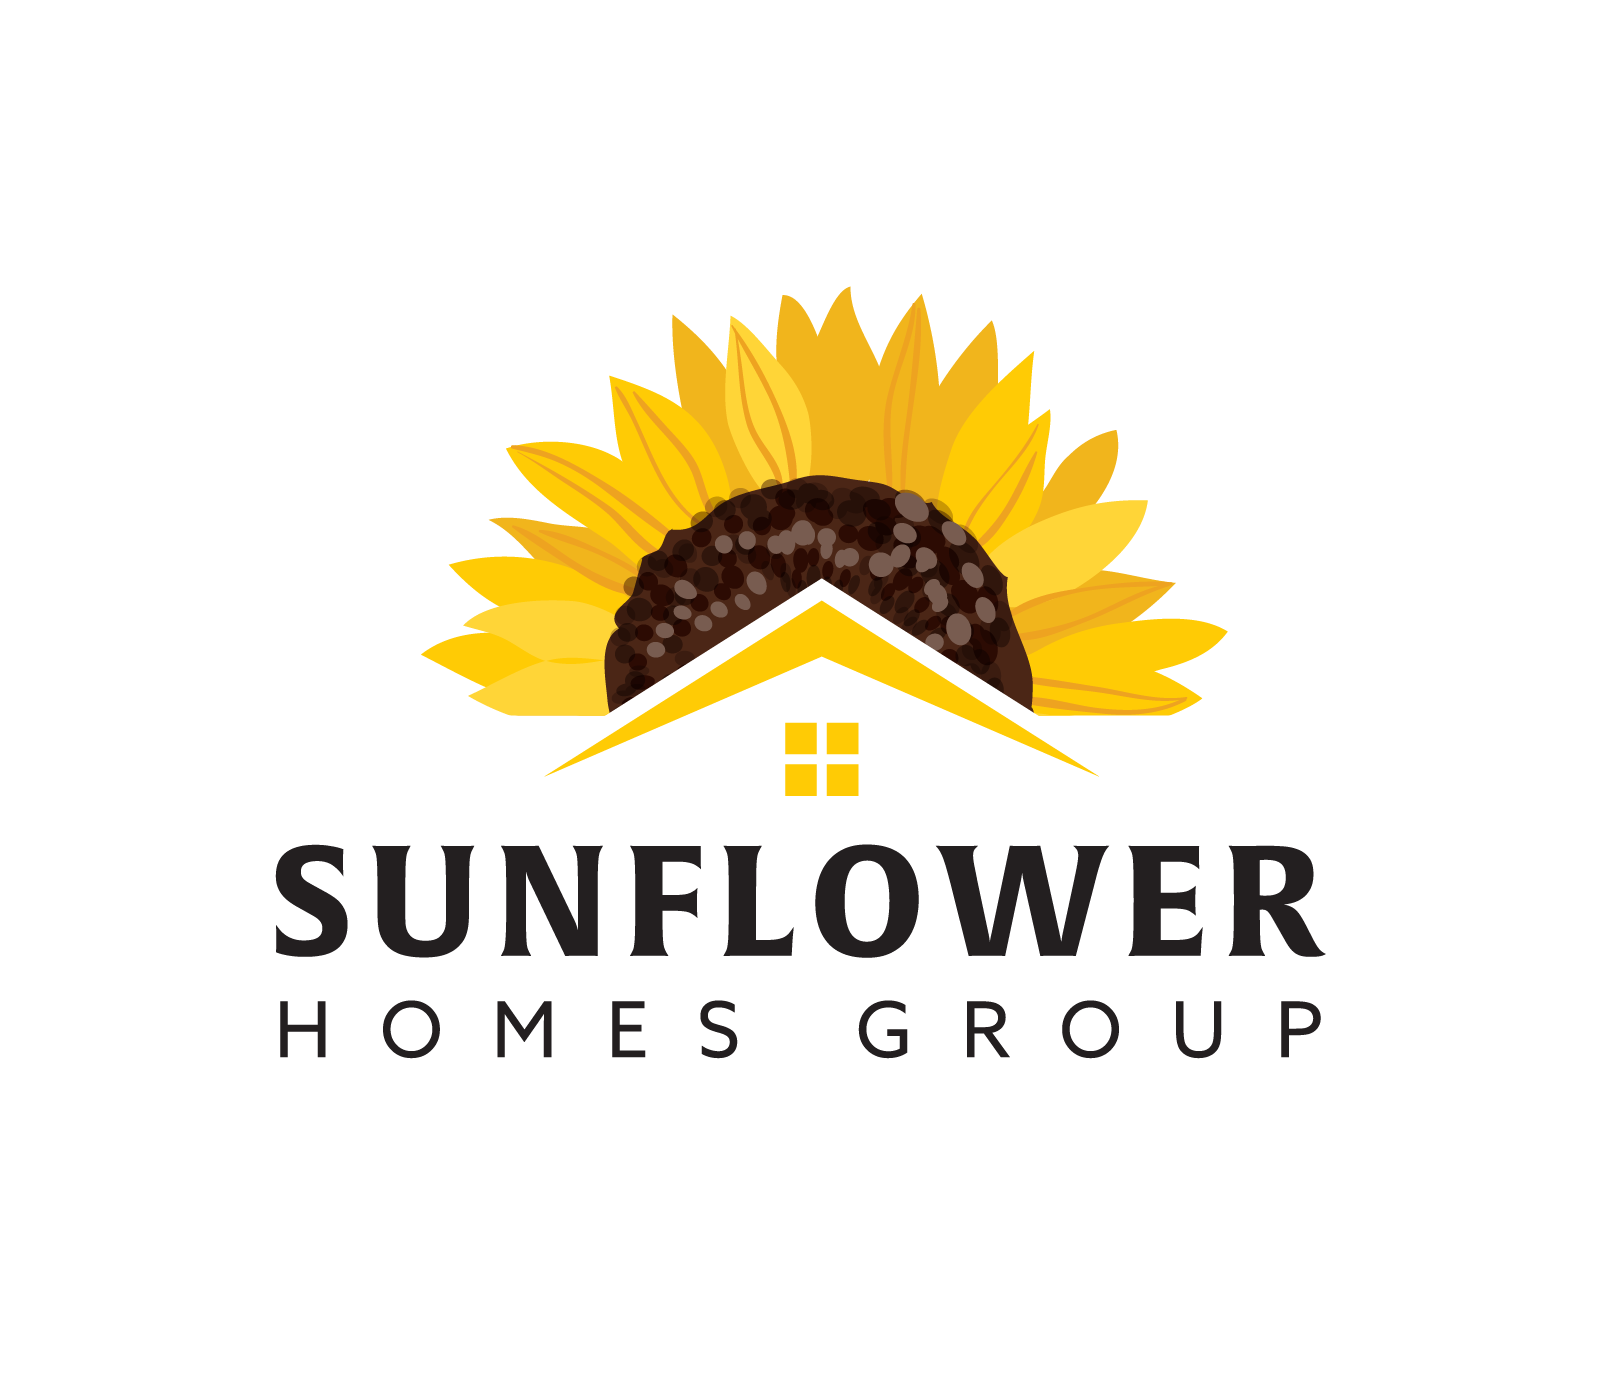 Sunflower Homes Group logo